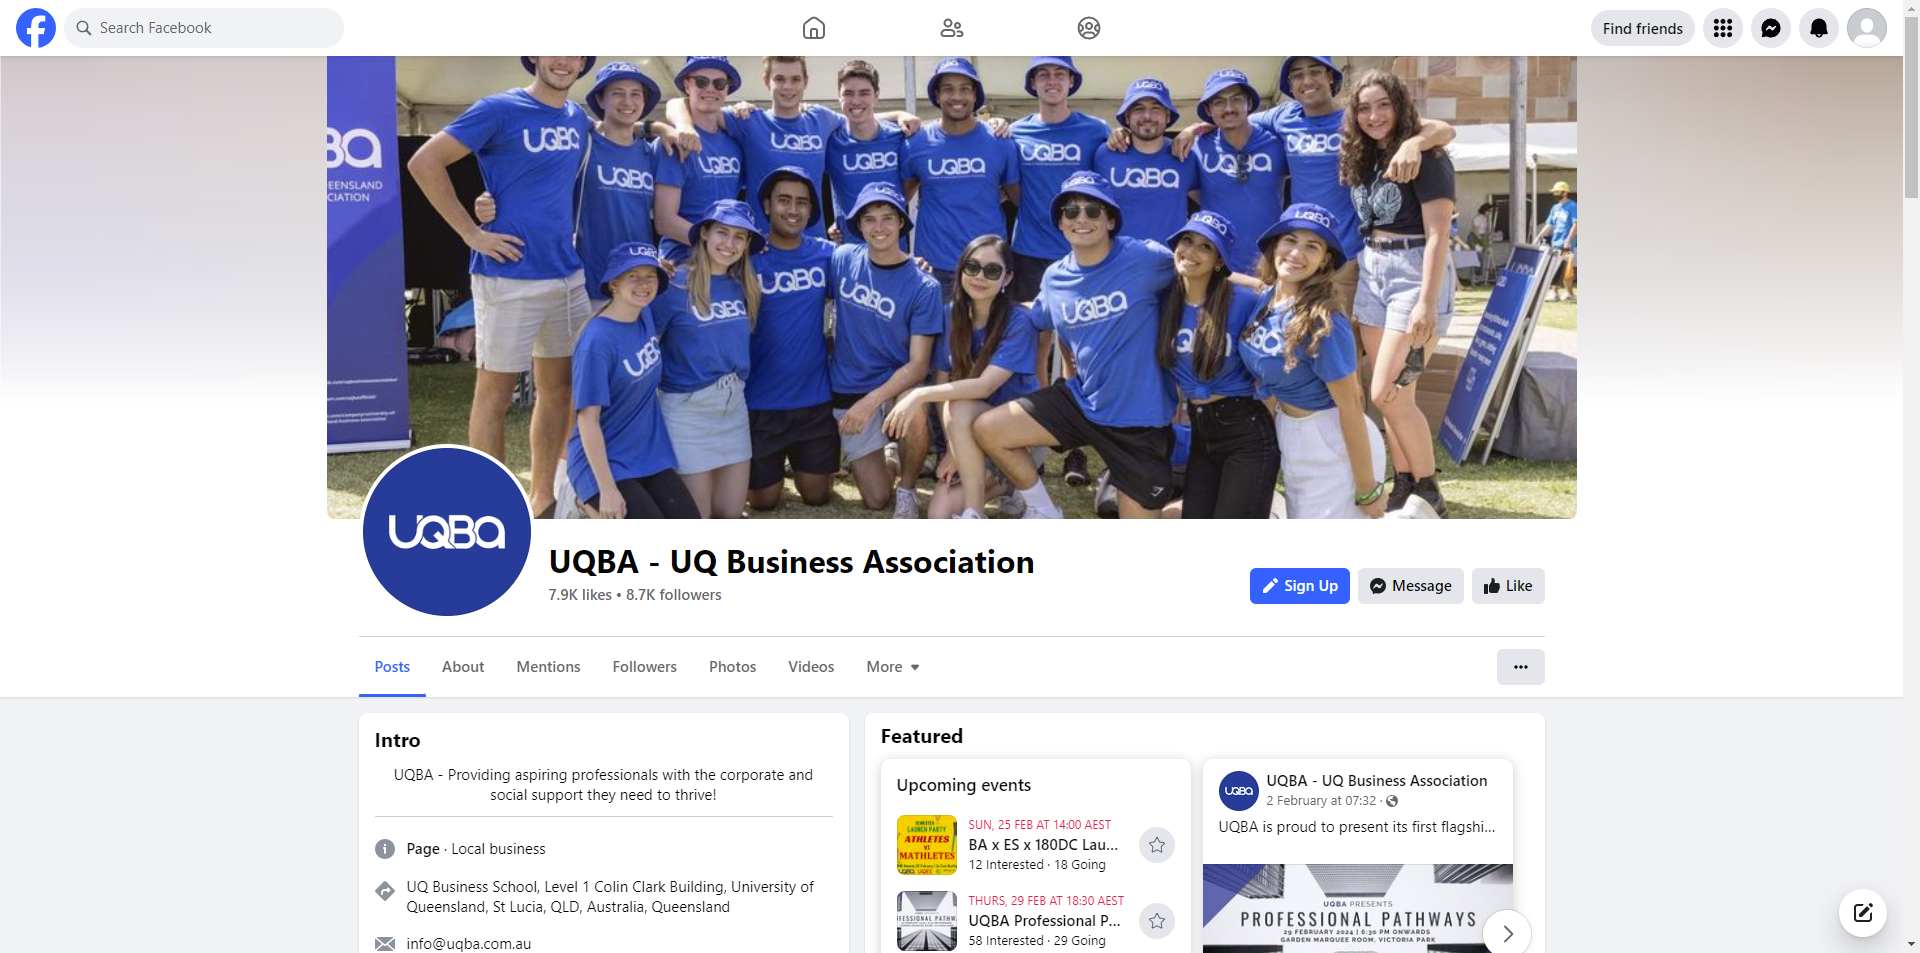 UQ Business Association